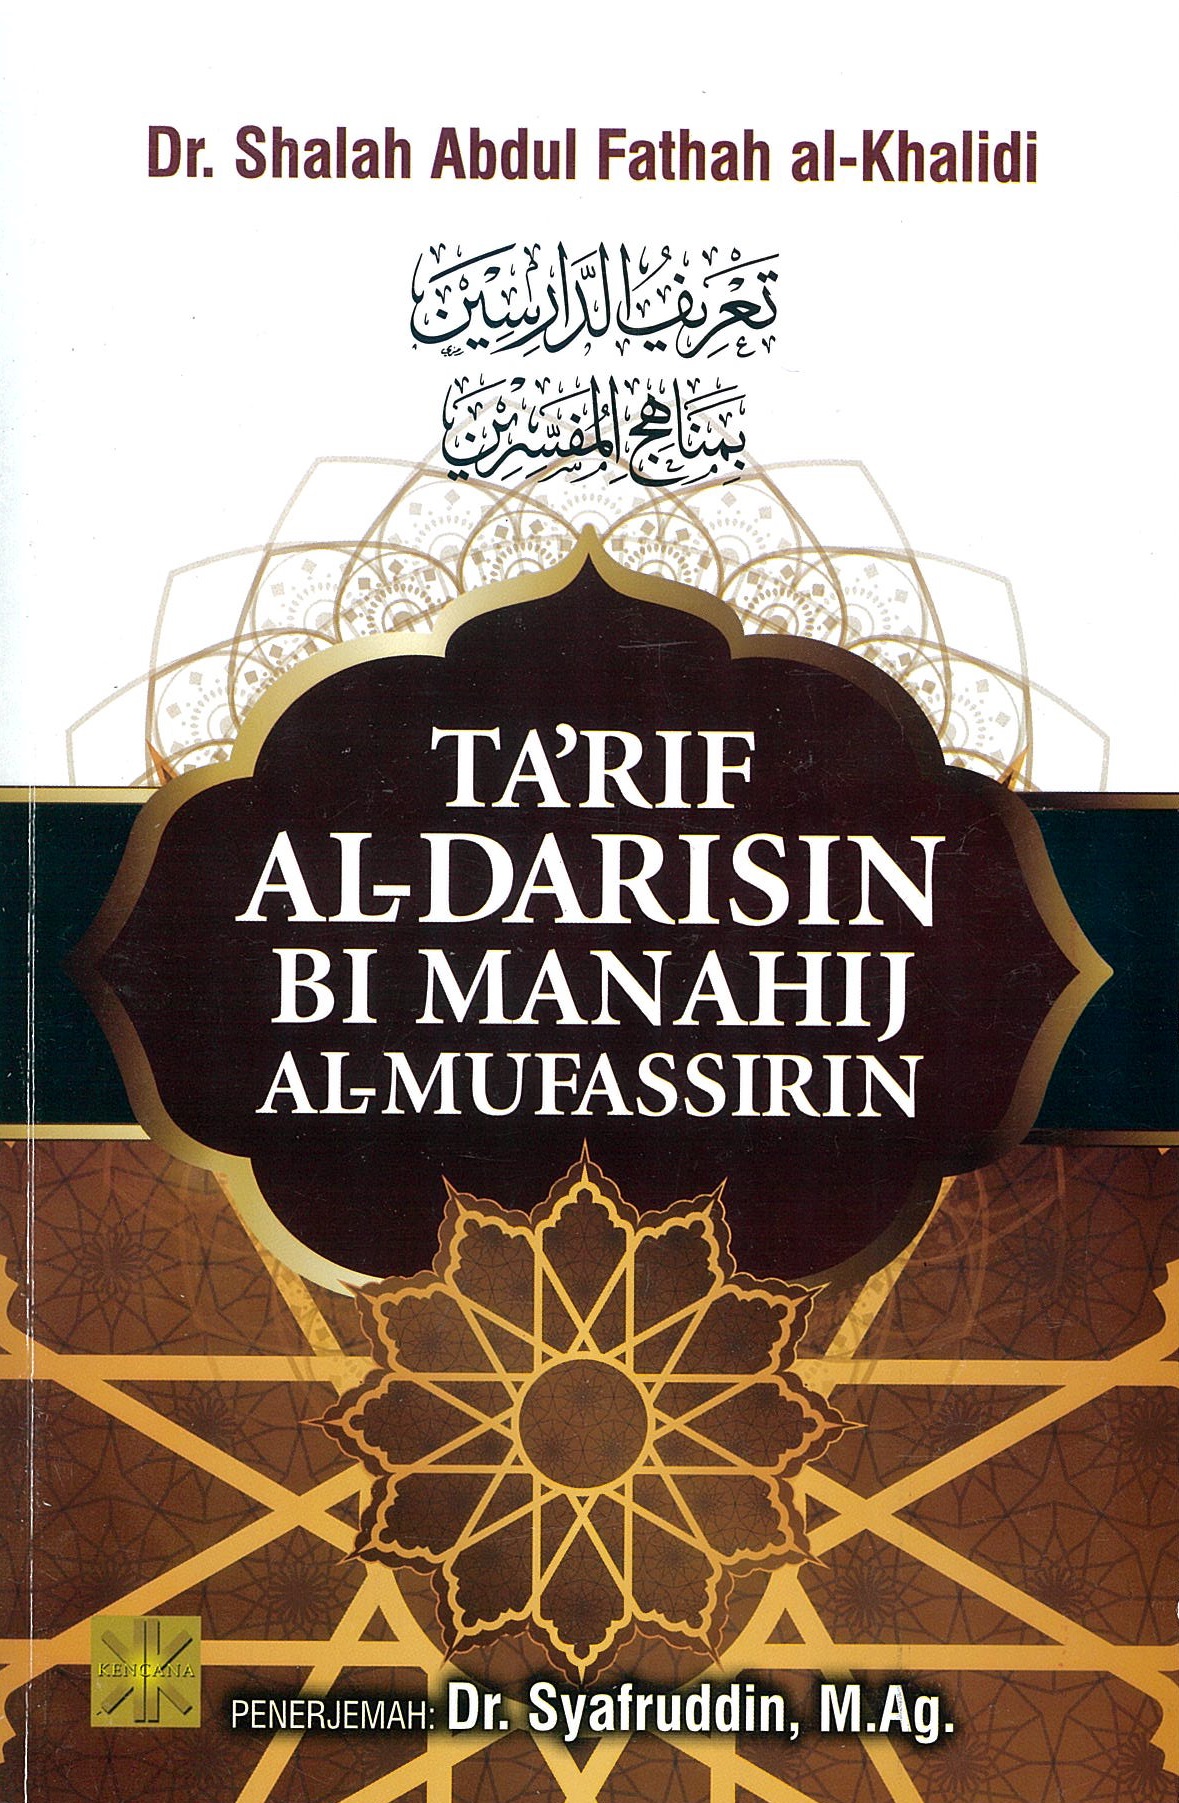 Ta'rif al-darisin bi manahij al-mufassirin